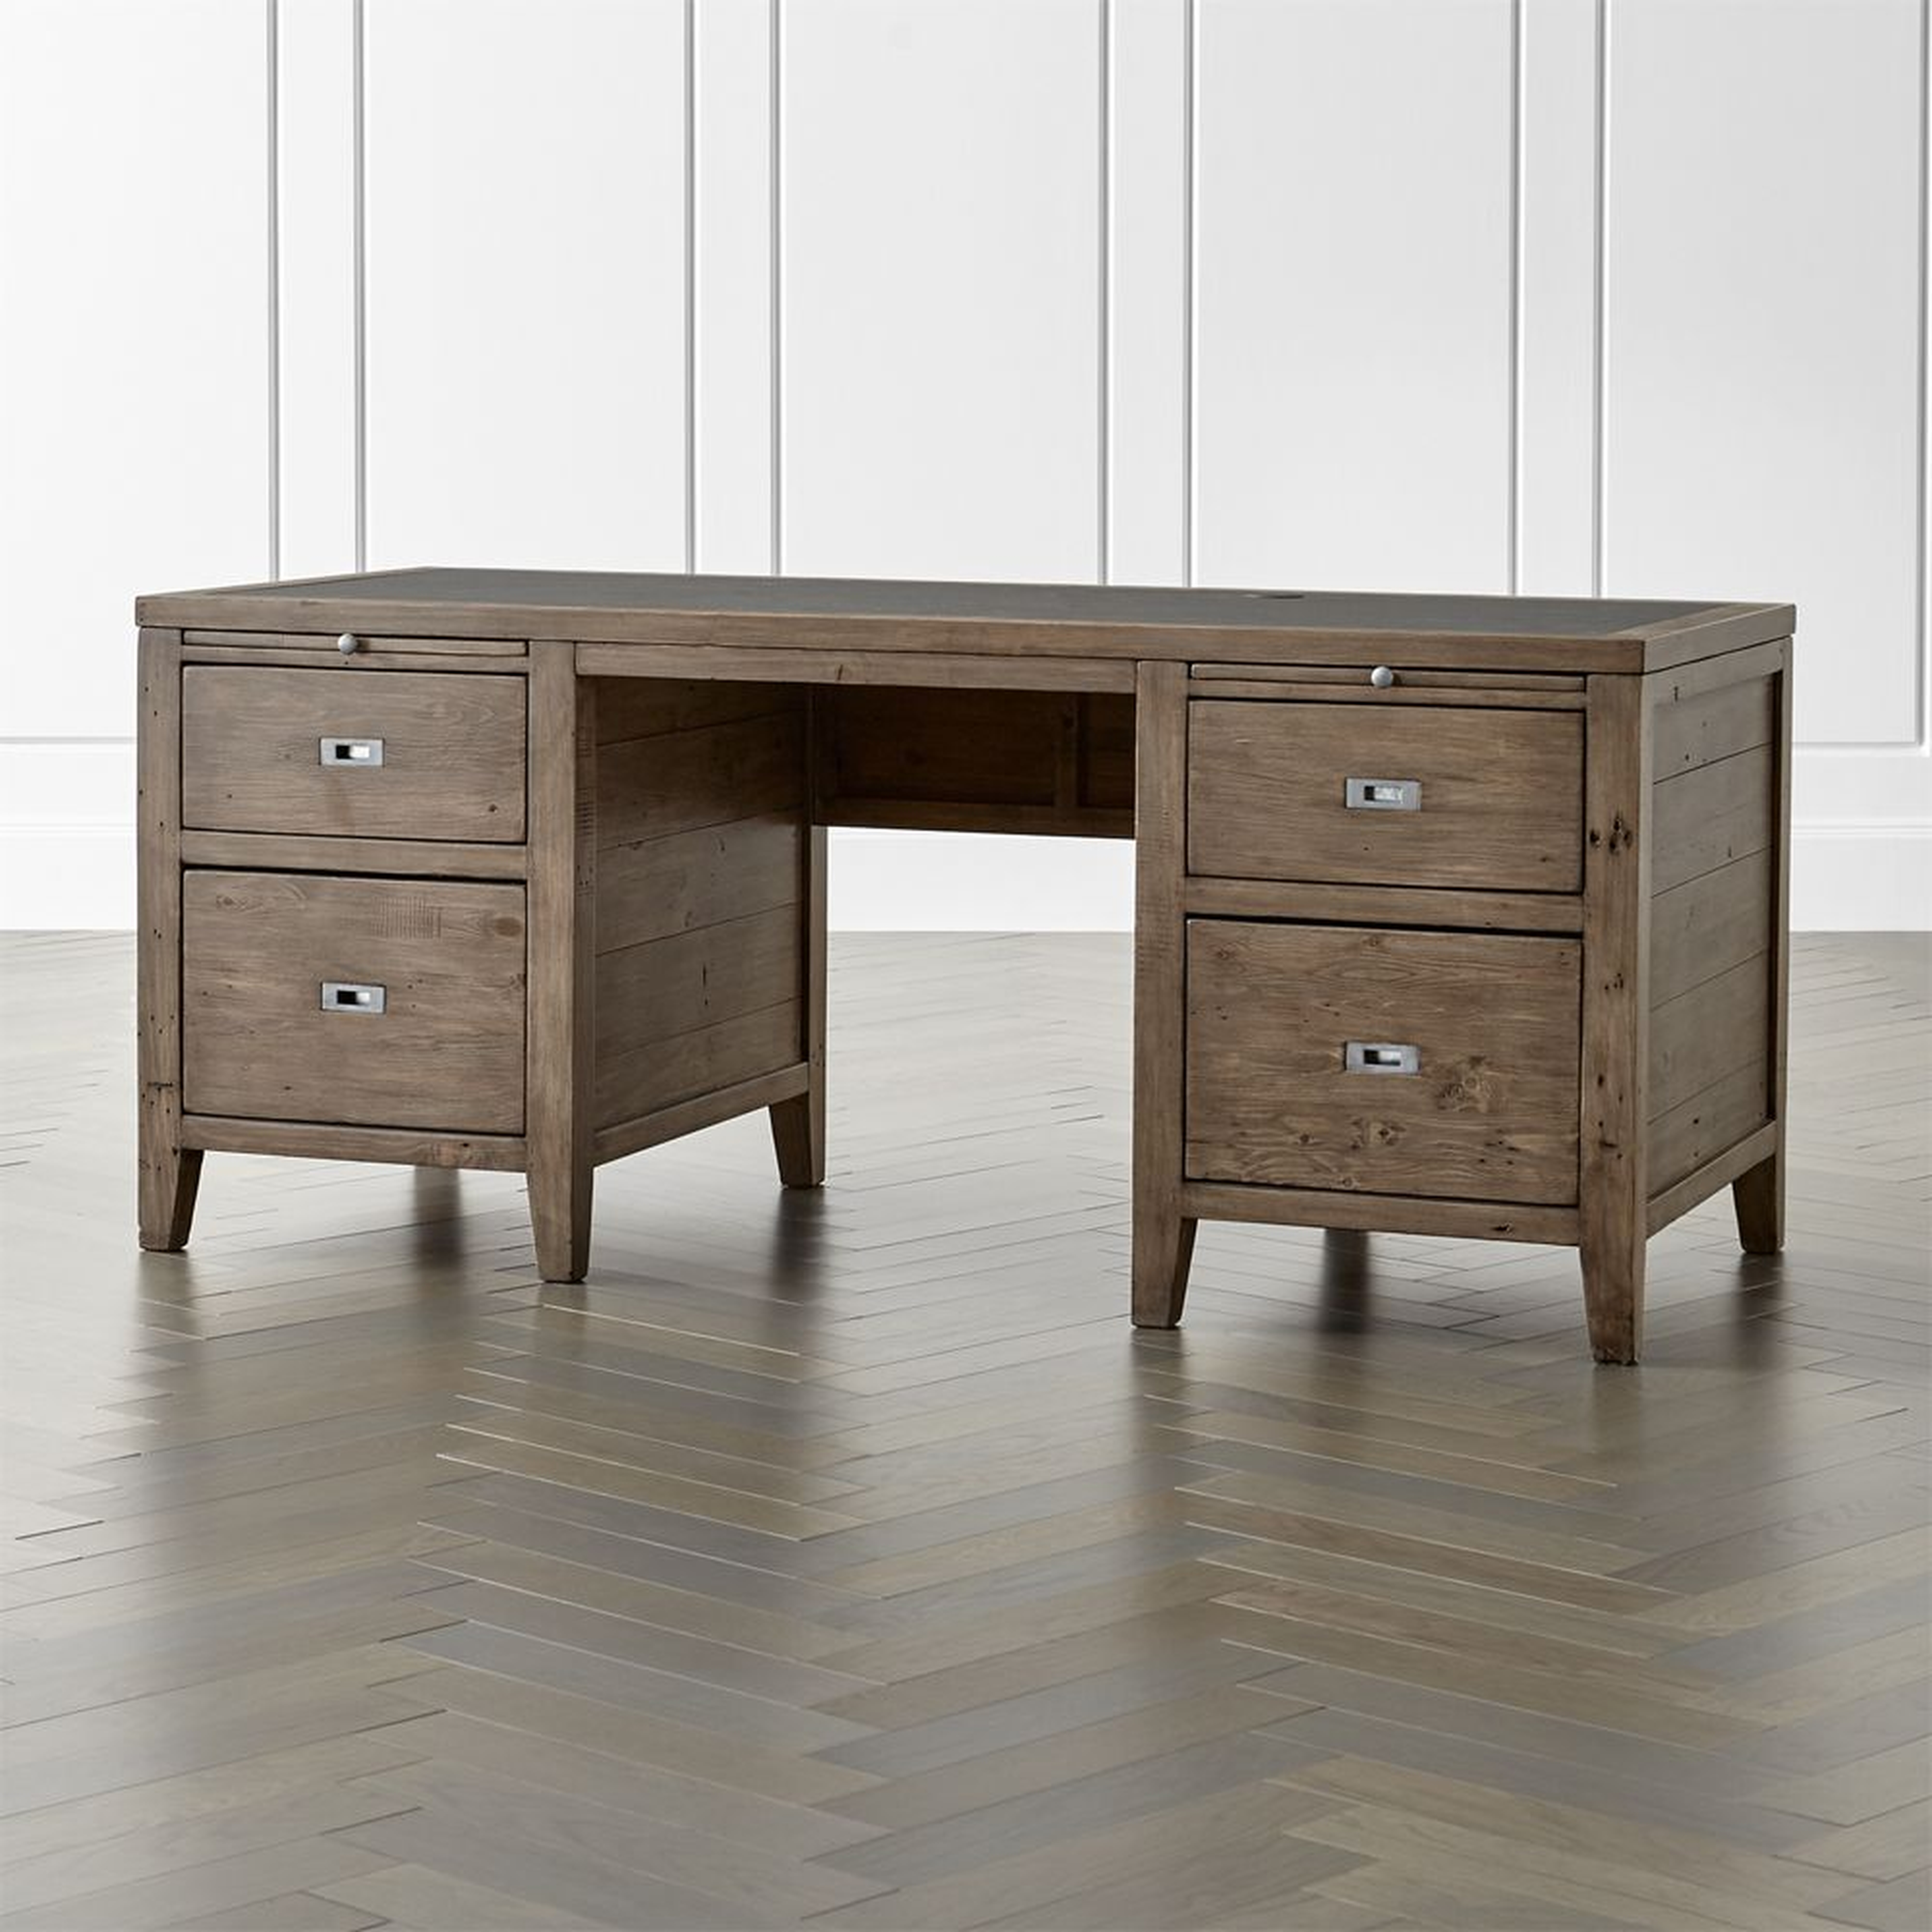 Morris Ash Grey Executive Desk - Crate and Barrel